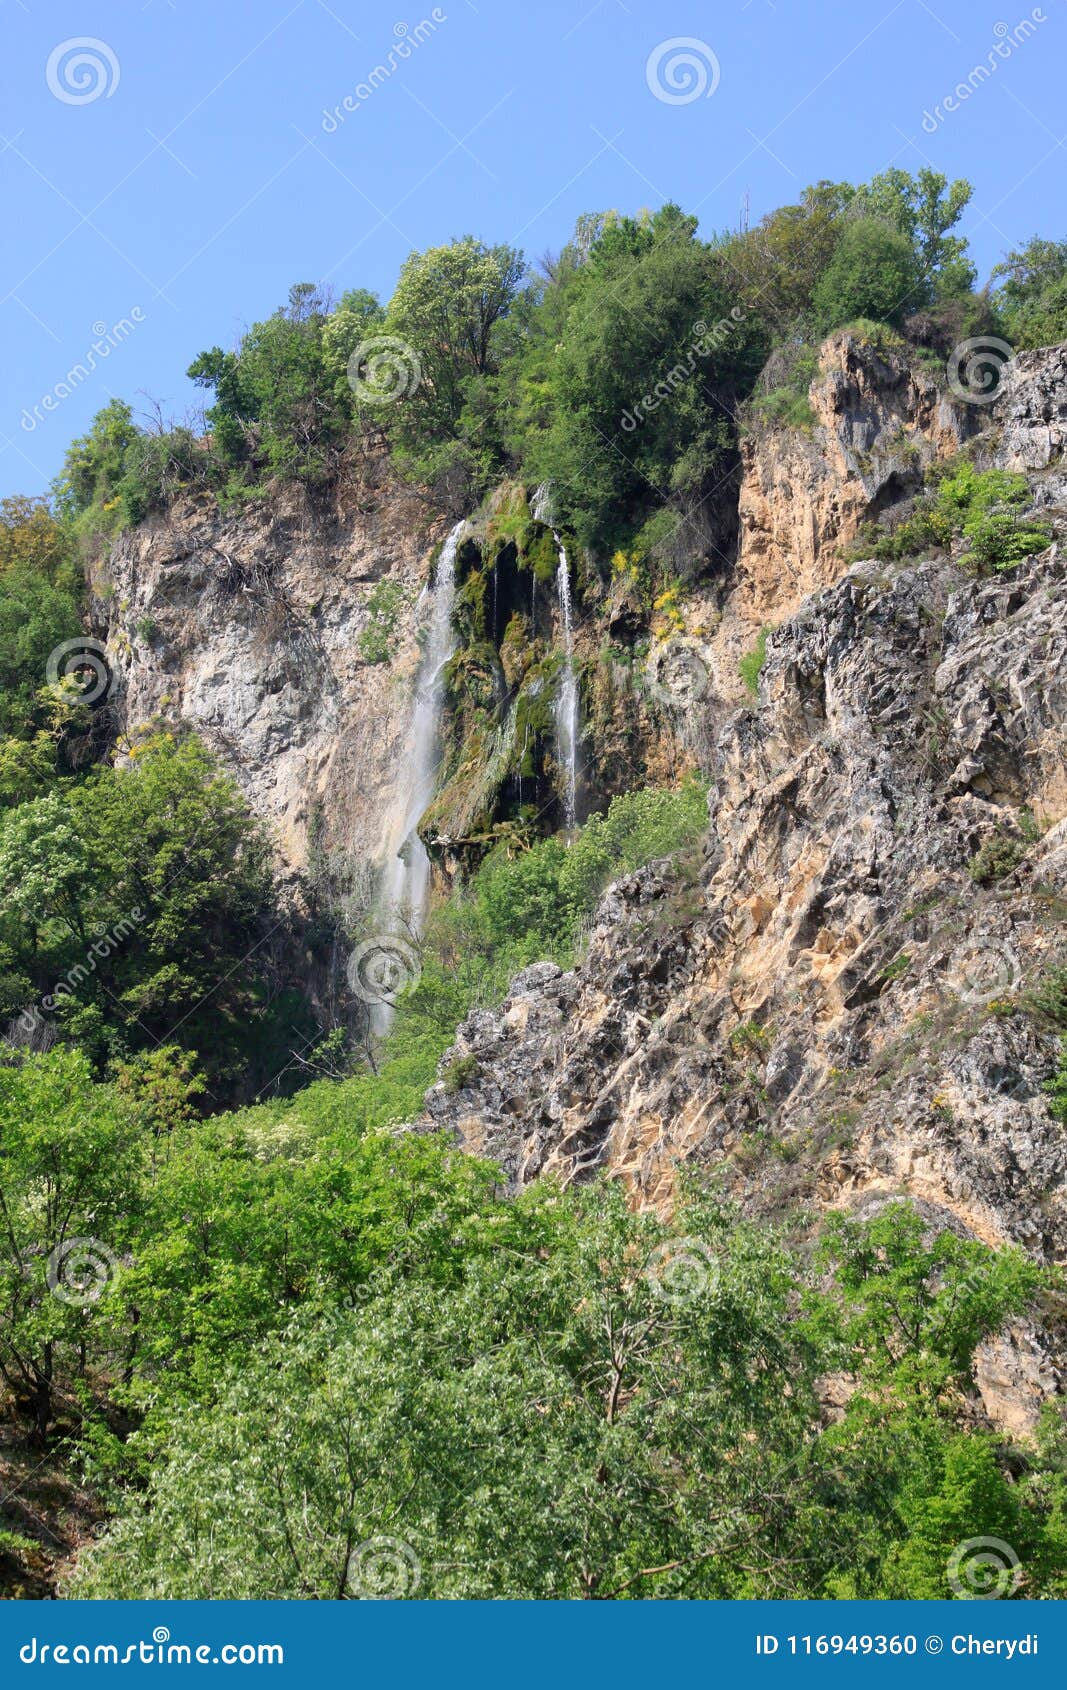 polska skakavitsa waterfall in bulgaria